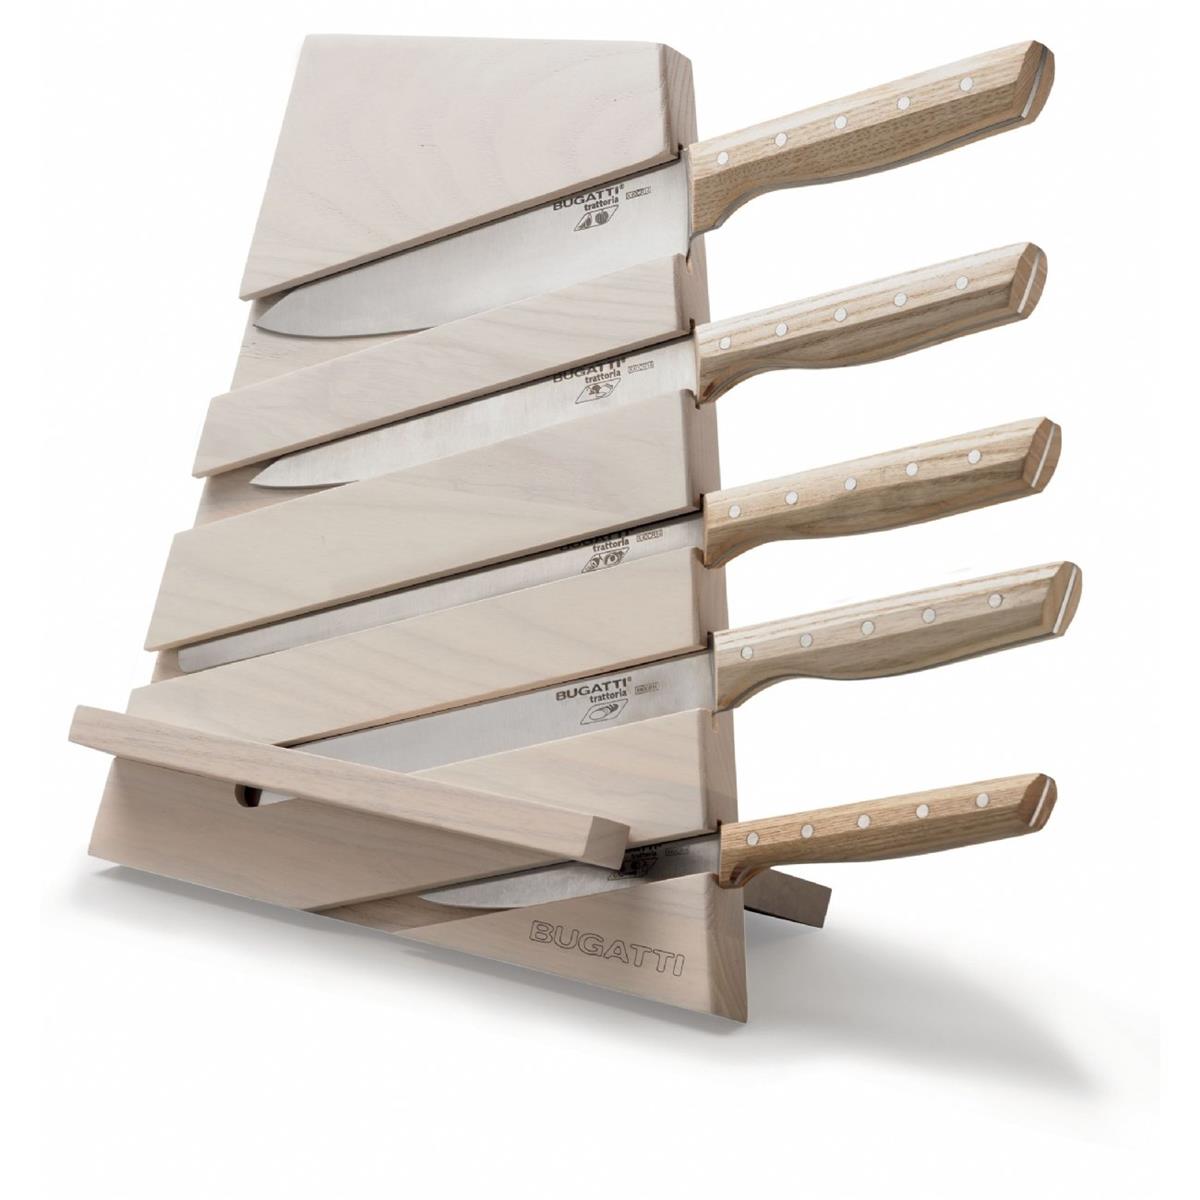 CEPPO TRATTORIA - Frêne blanchi avec planche à découper et pupitre - 5 couteaux avec manche en bois